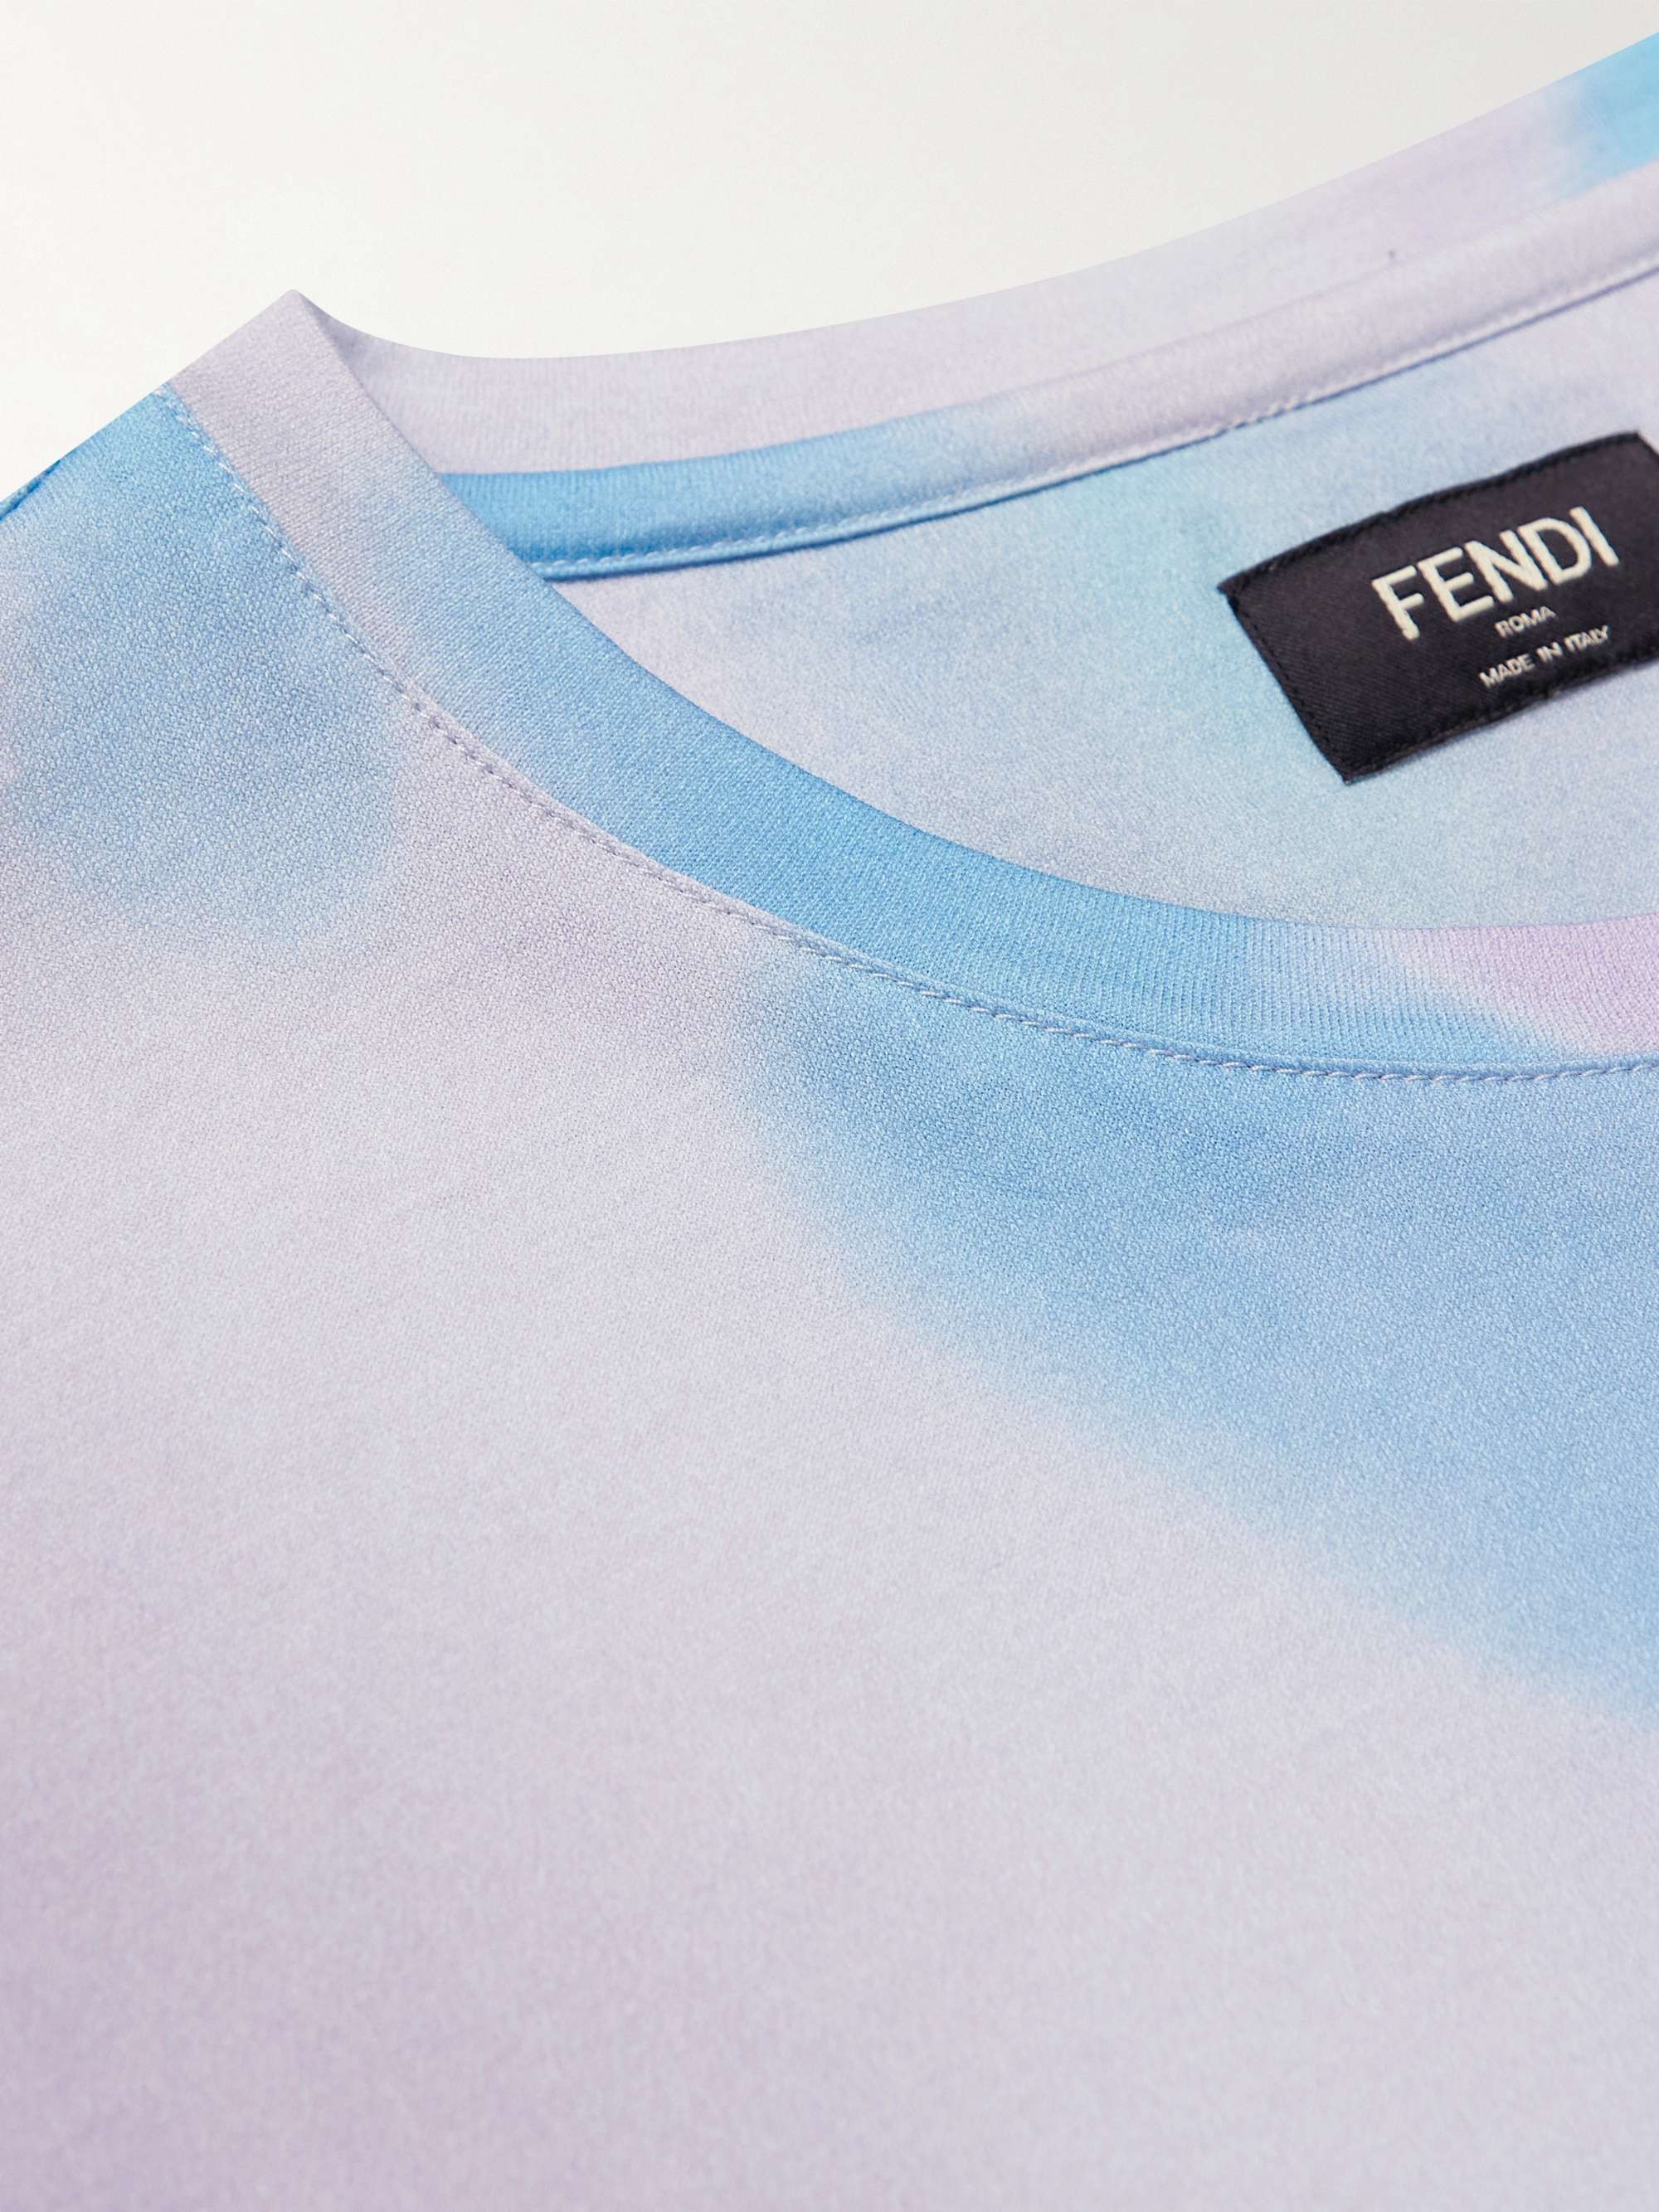 FENDI Printed Cotton-Jersey T-Shirt